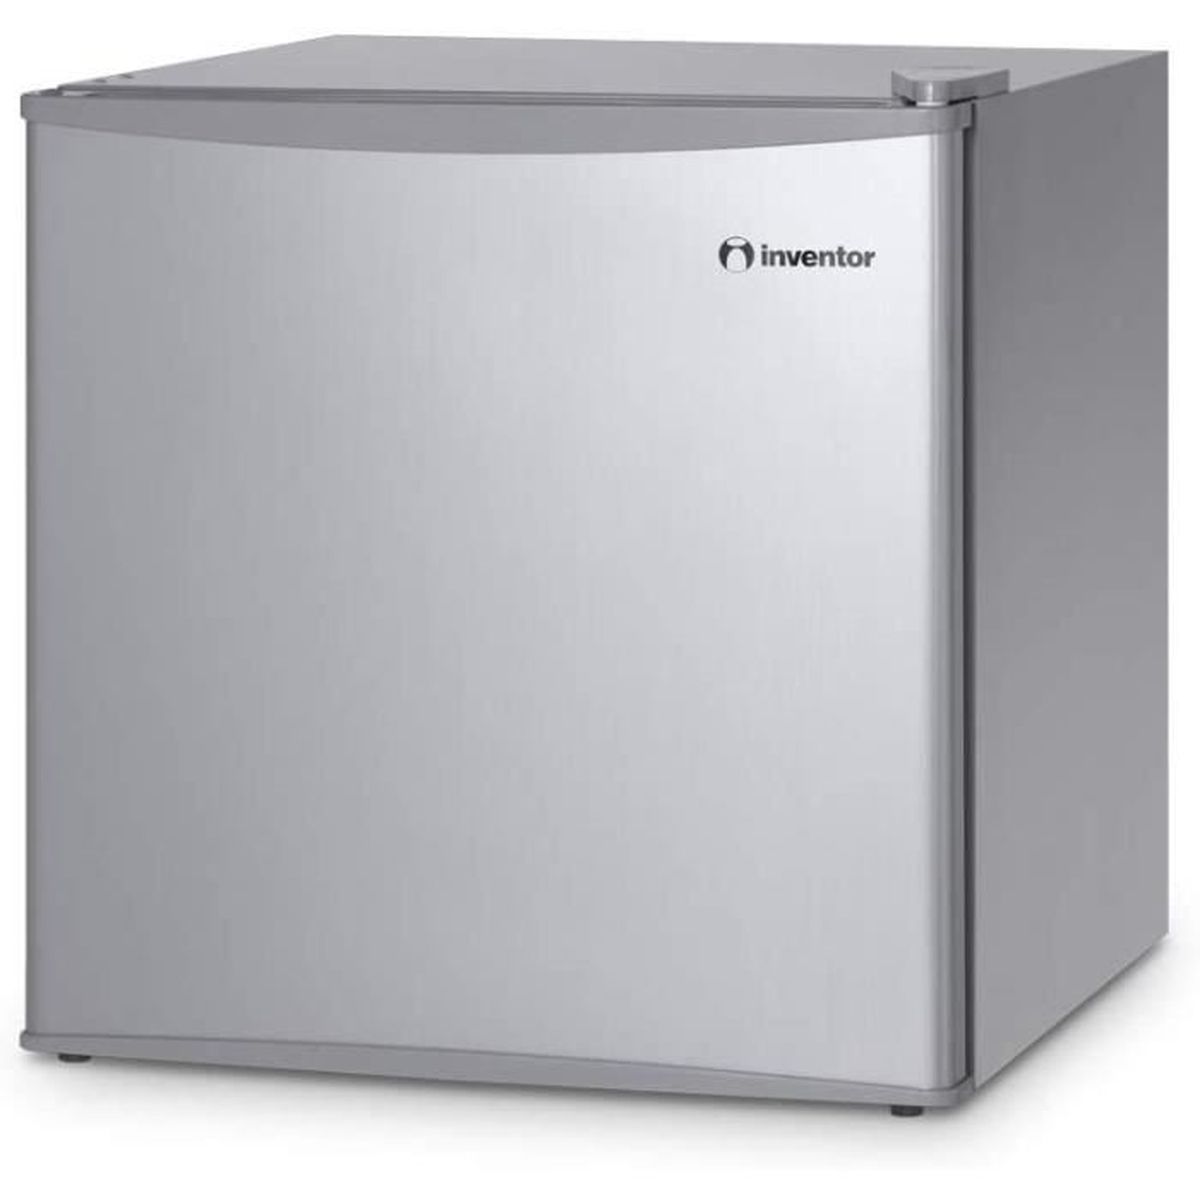 mm x 450 hauteur largeur Sirge Frigo43L Mini-réfrigérateur avec compresseur Classe defficacité énergétique A+ 43 Litres x 492 profondeur Dimensions: 472 